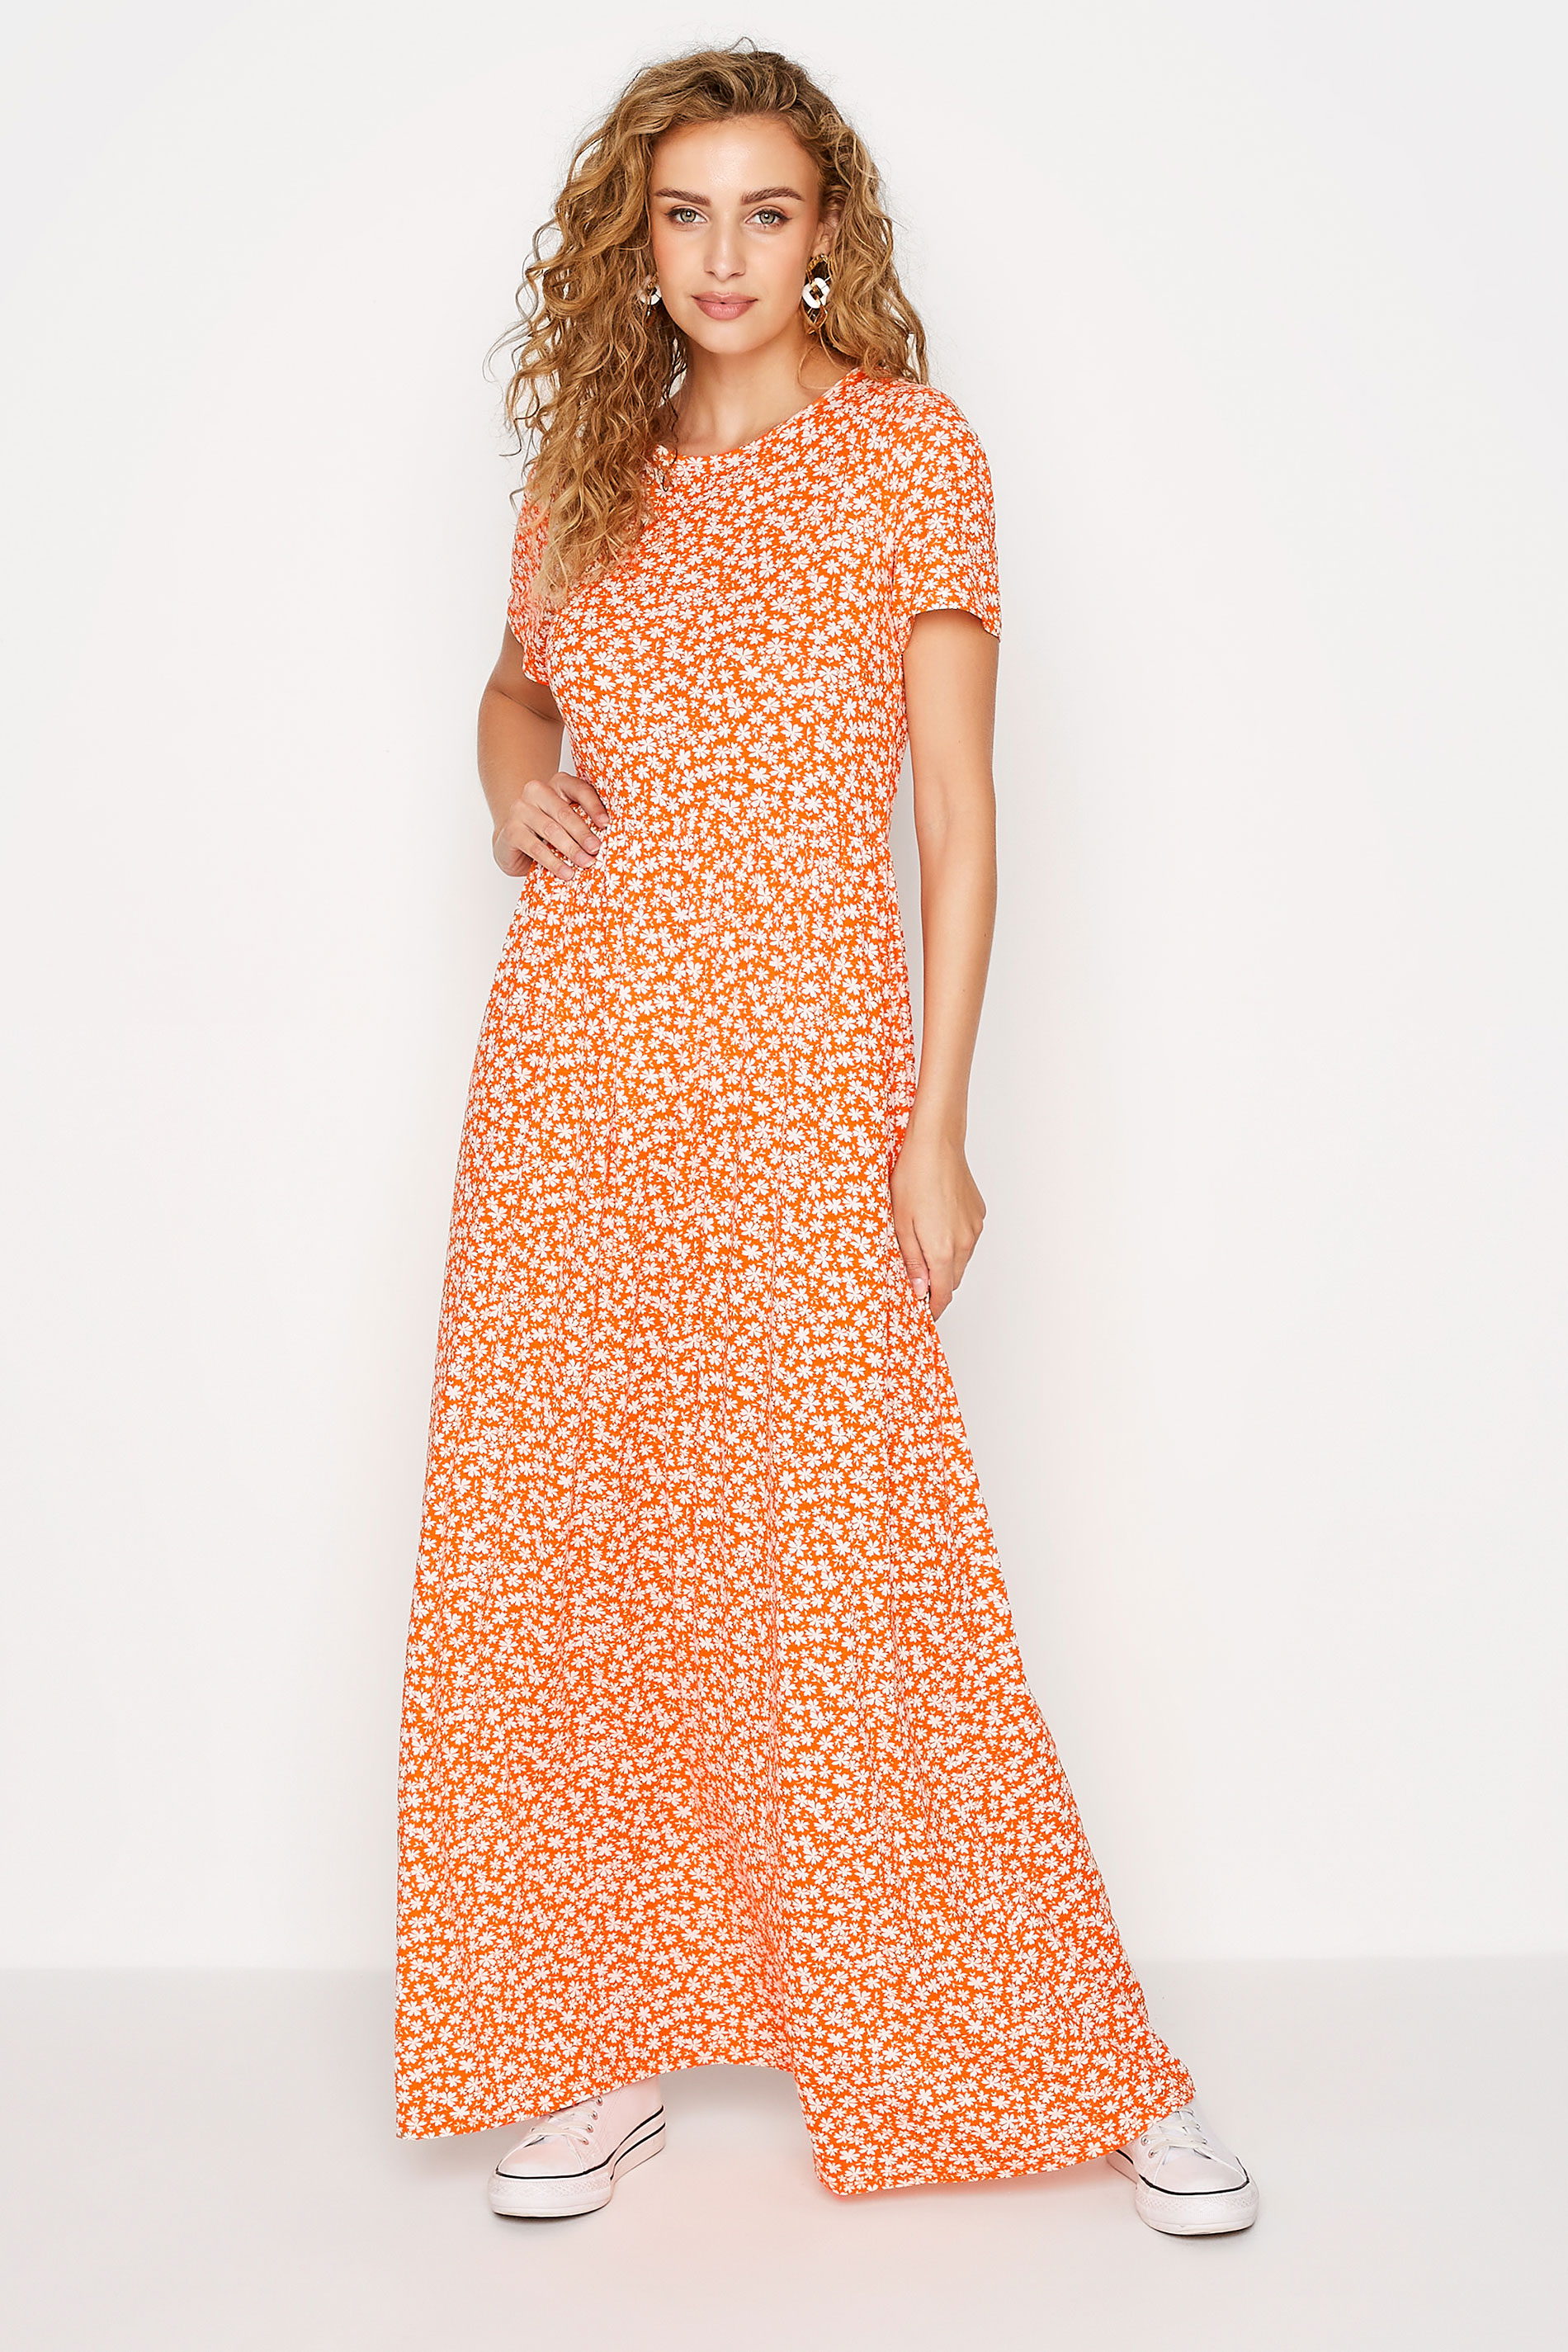 LTS Tall Orange Ditsy Print Maxi Dress 1